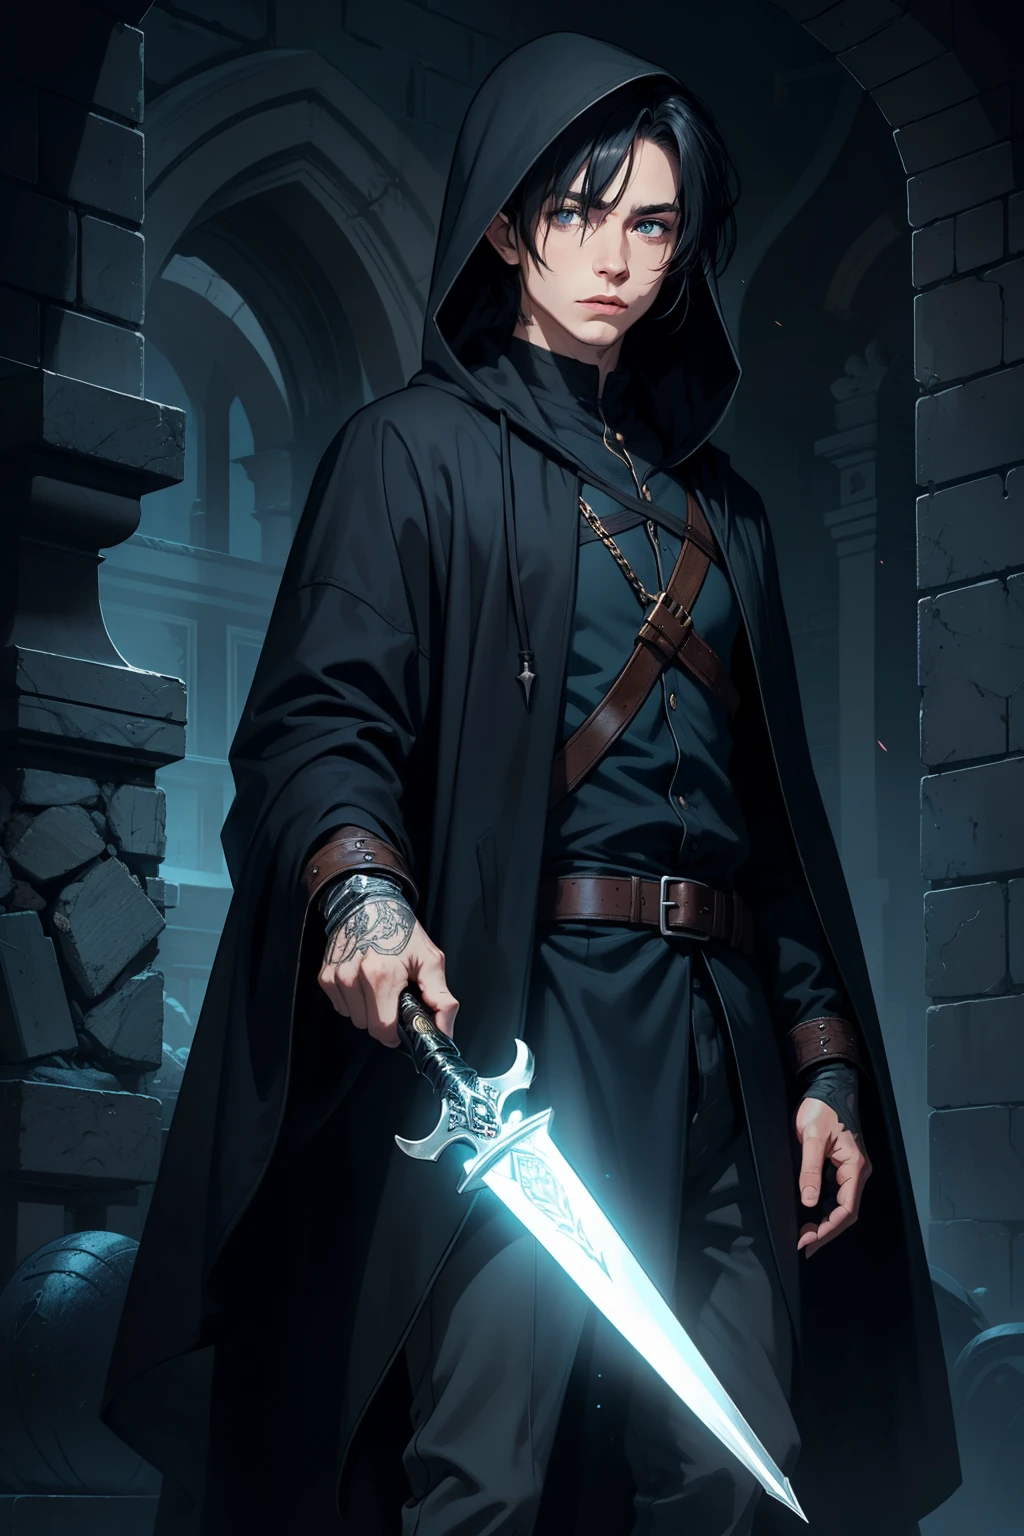 homem misterioso elfo assassino arcano malandro desonesto manto escuro com capuz, olhos azuis, cabelo preto curto, com um punhal, lançando um feitiço